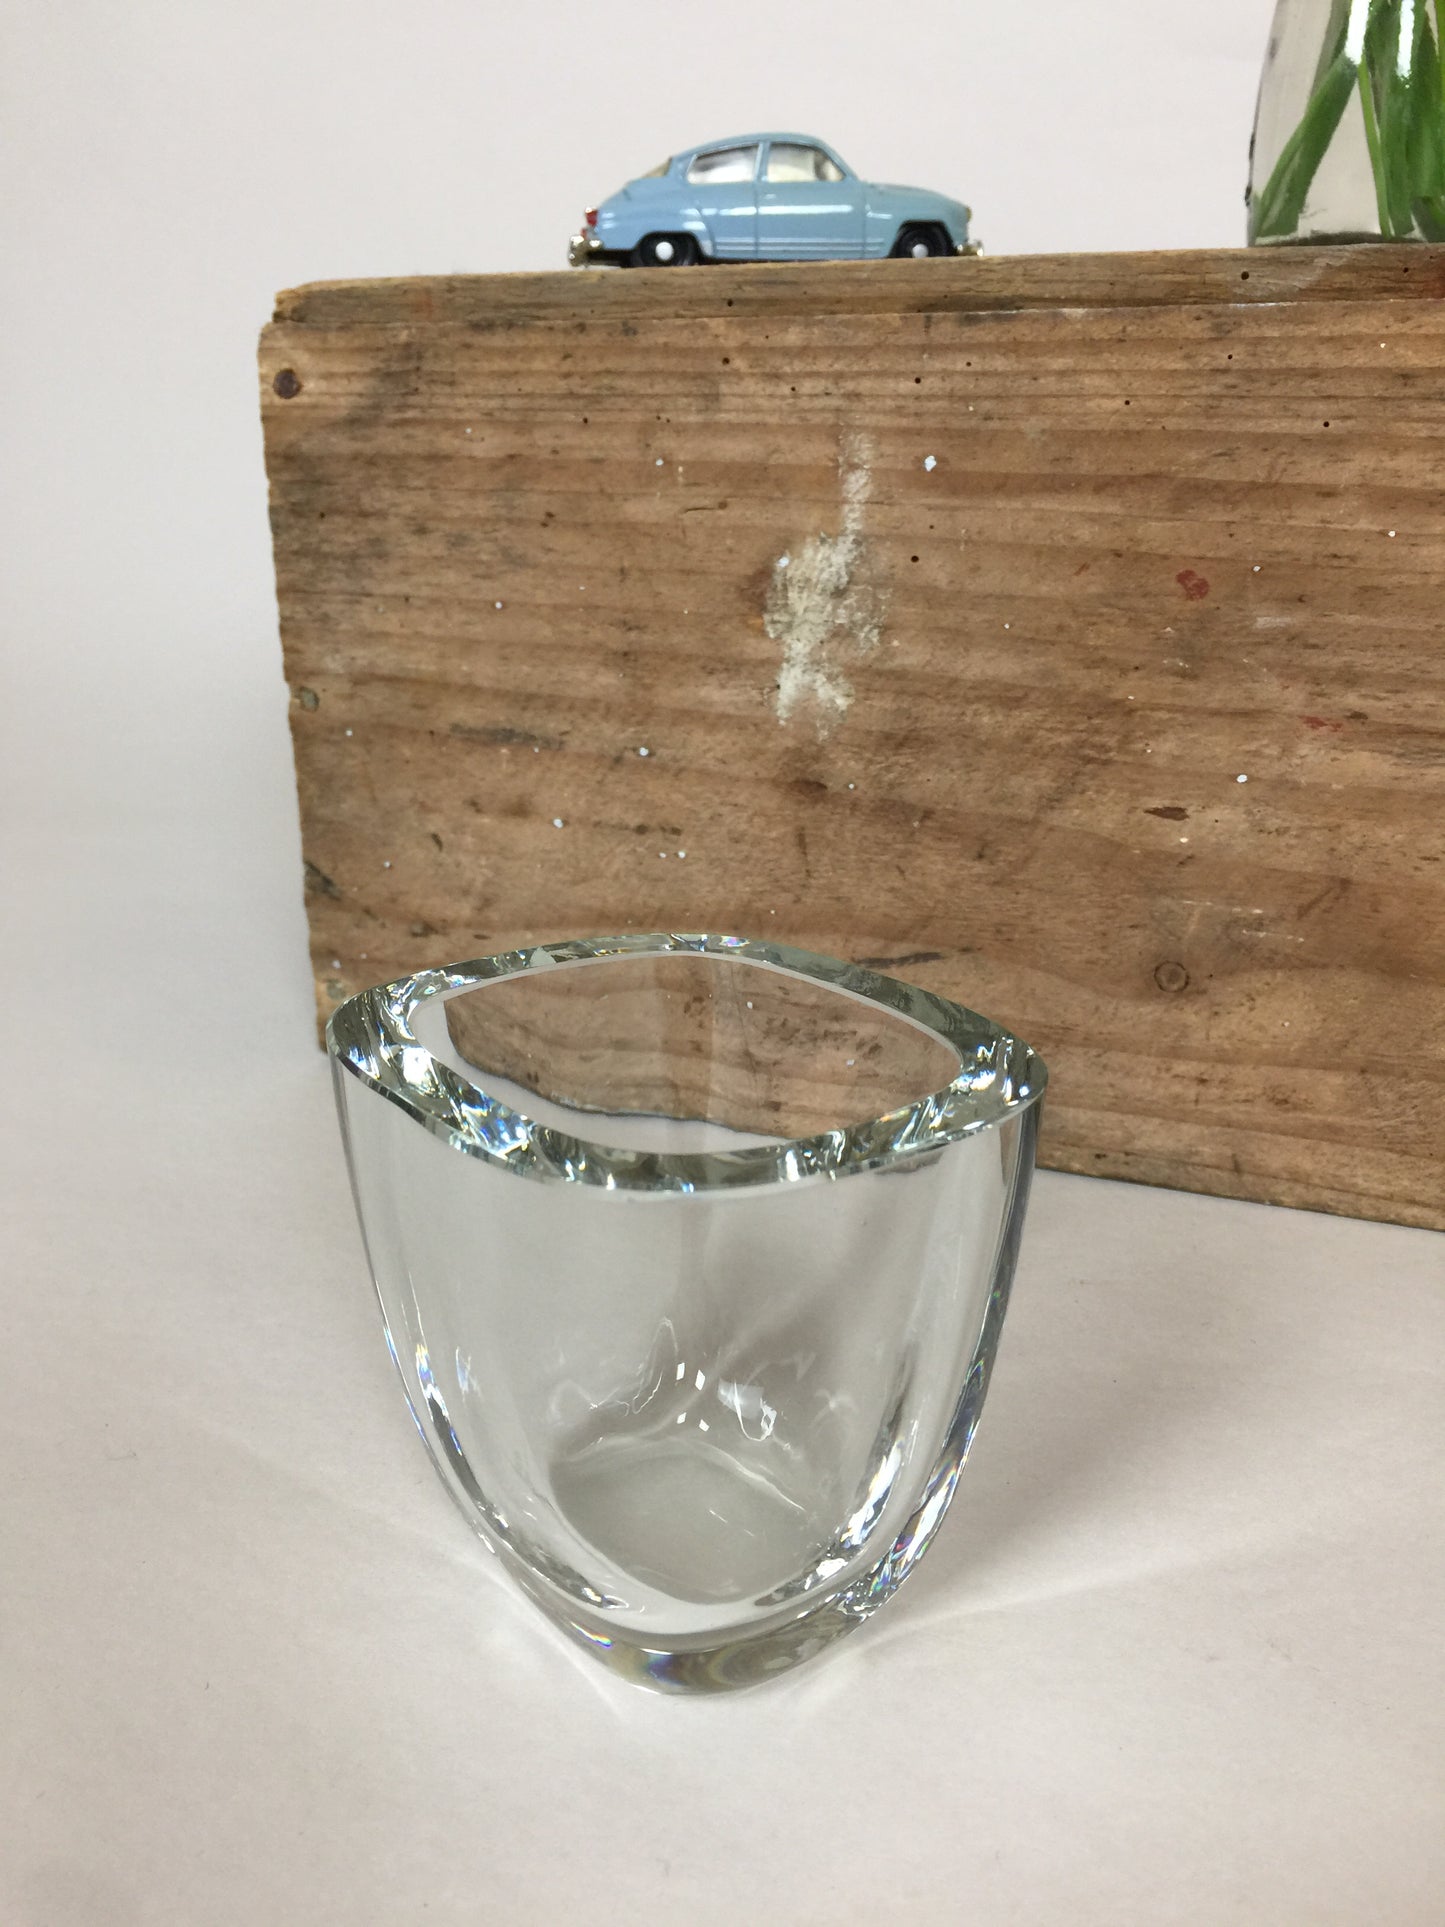 Smuk gammel glas vase - sandsynligvis fra Strömbergshyttan i Sverige